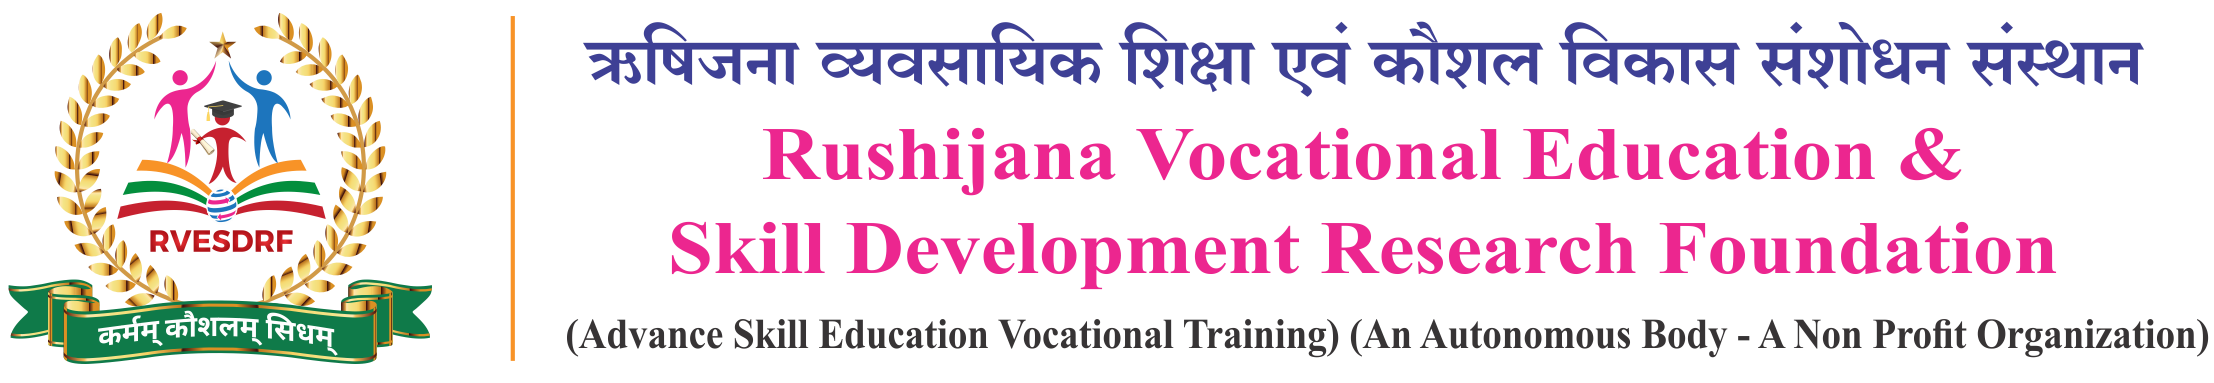 Rushijana Vocational Education And Skill (RVESDRF) Logo